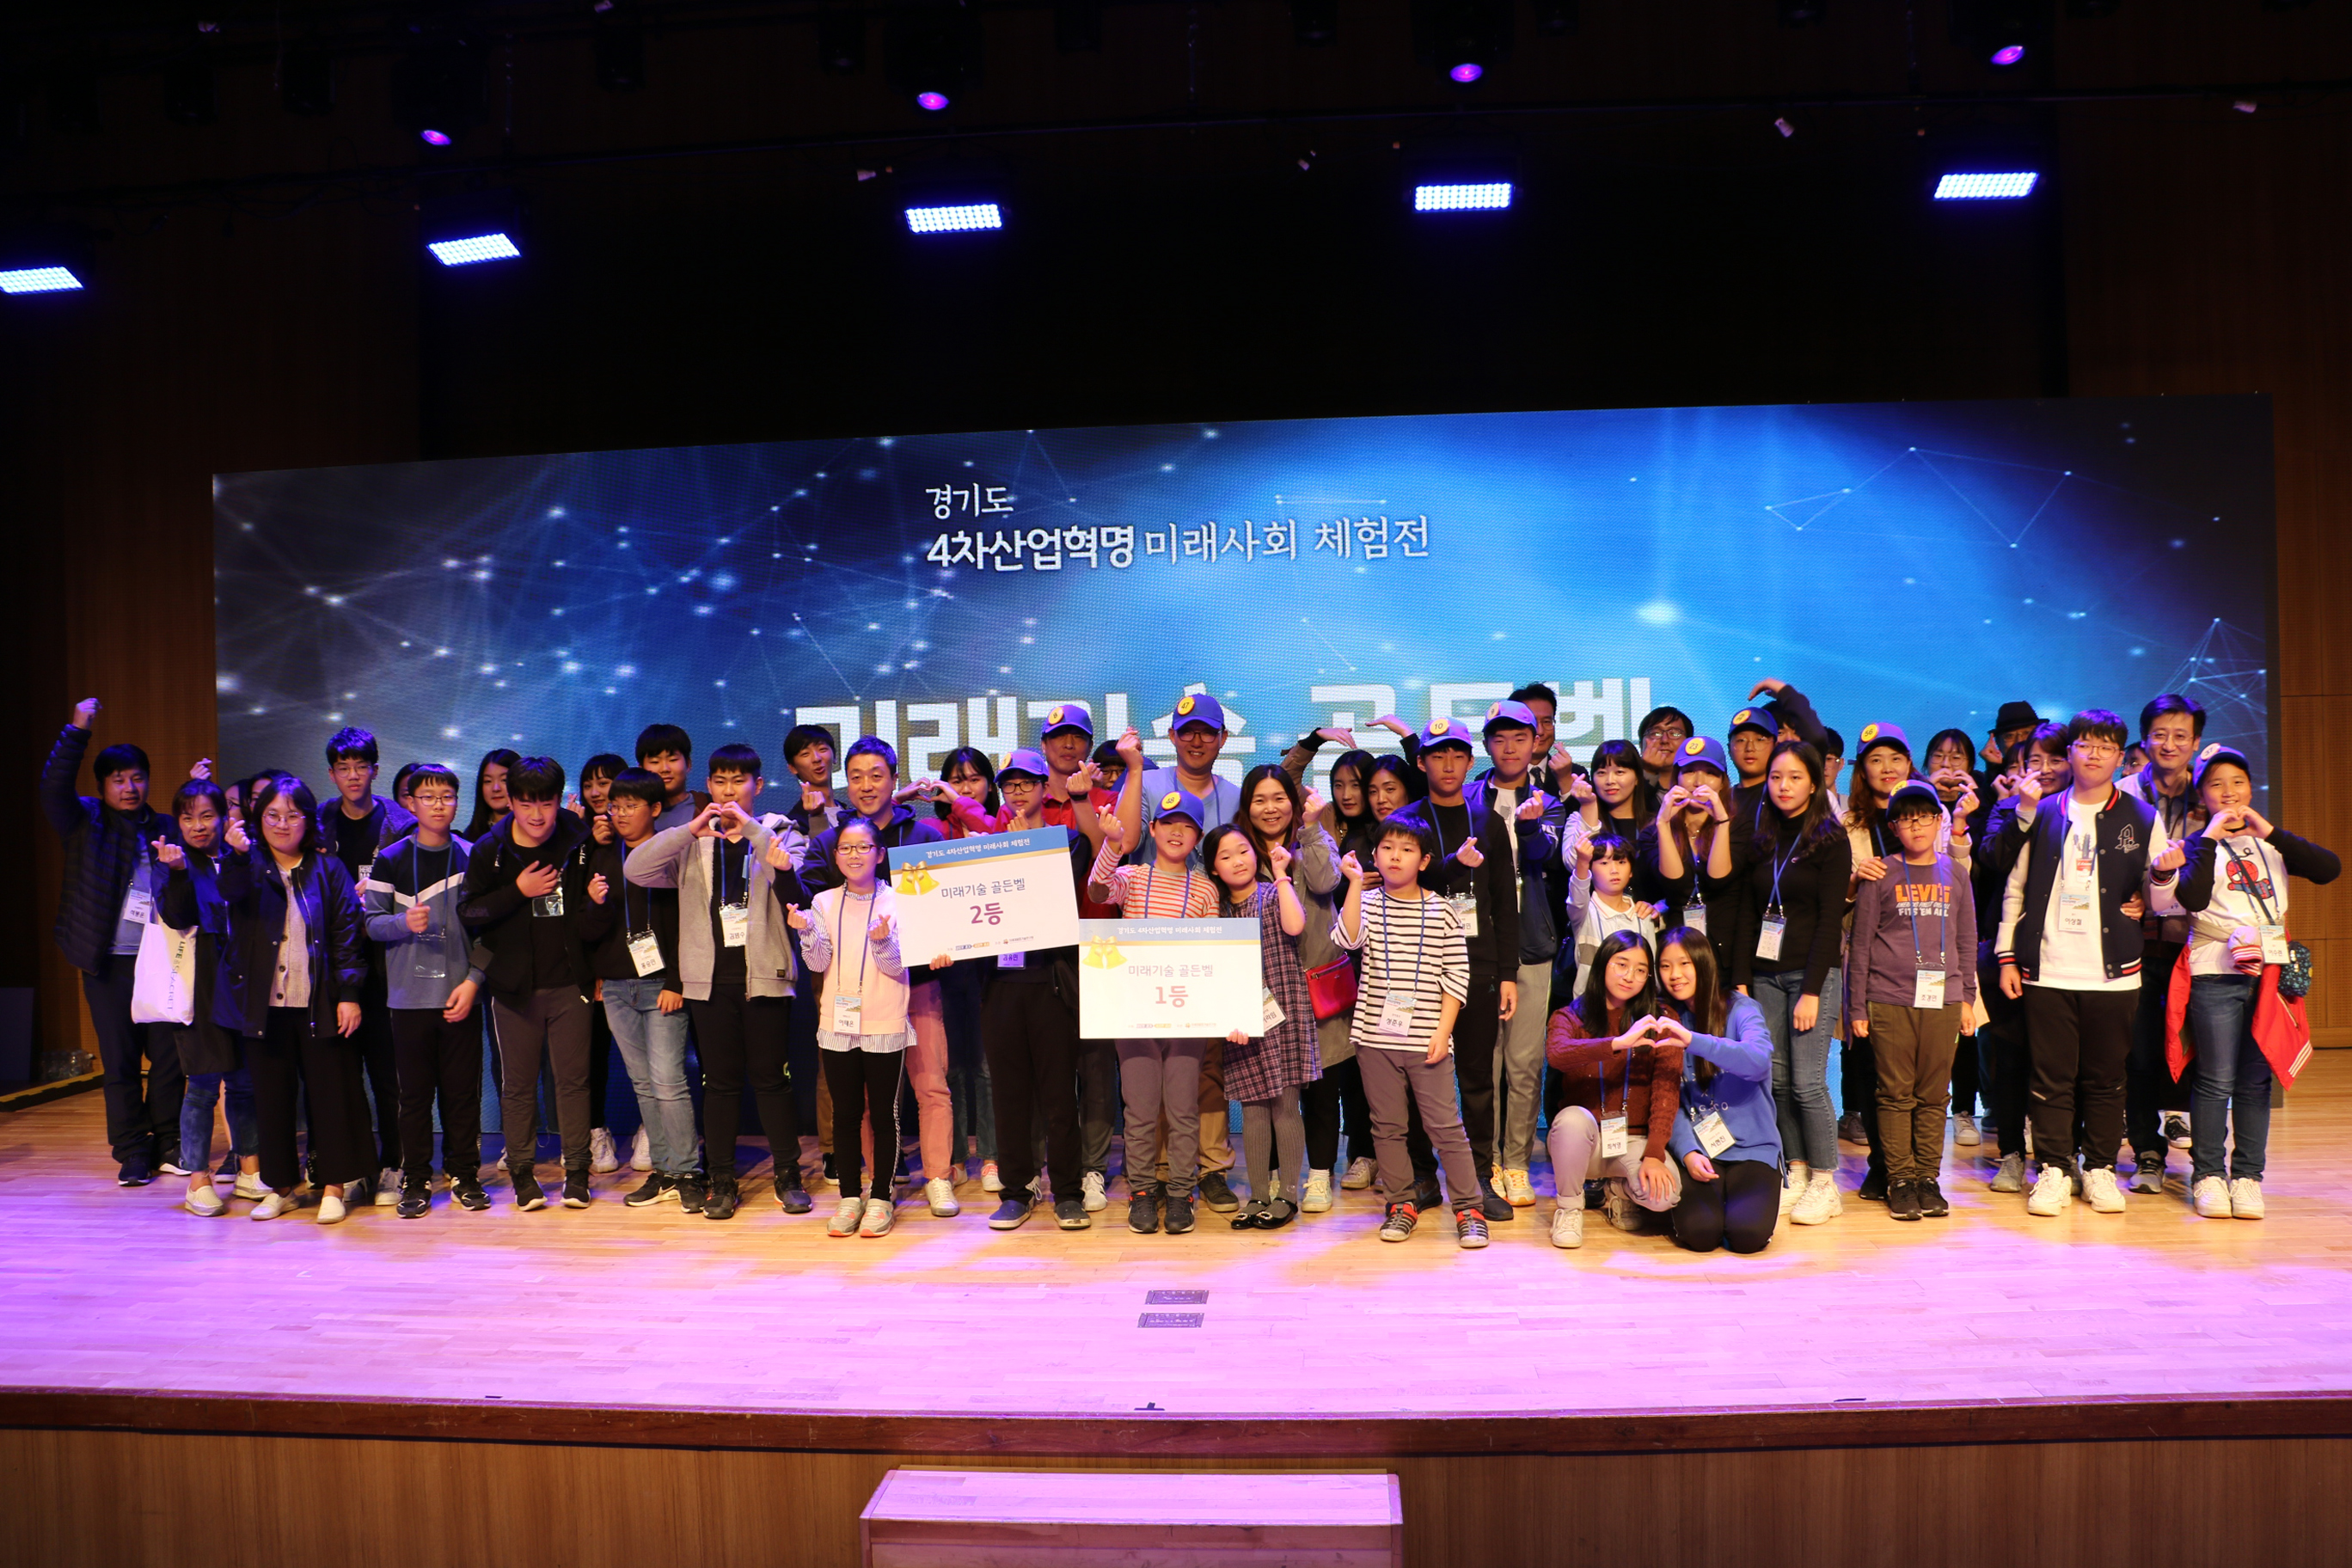 융기원, 경기도 4차 산업혁명 미래사회 체험전 개최